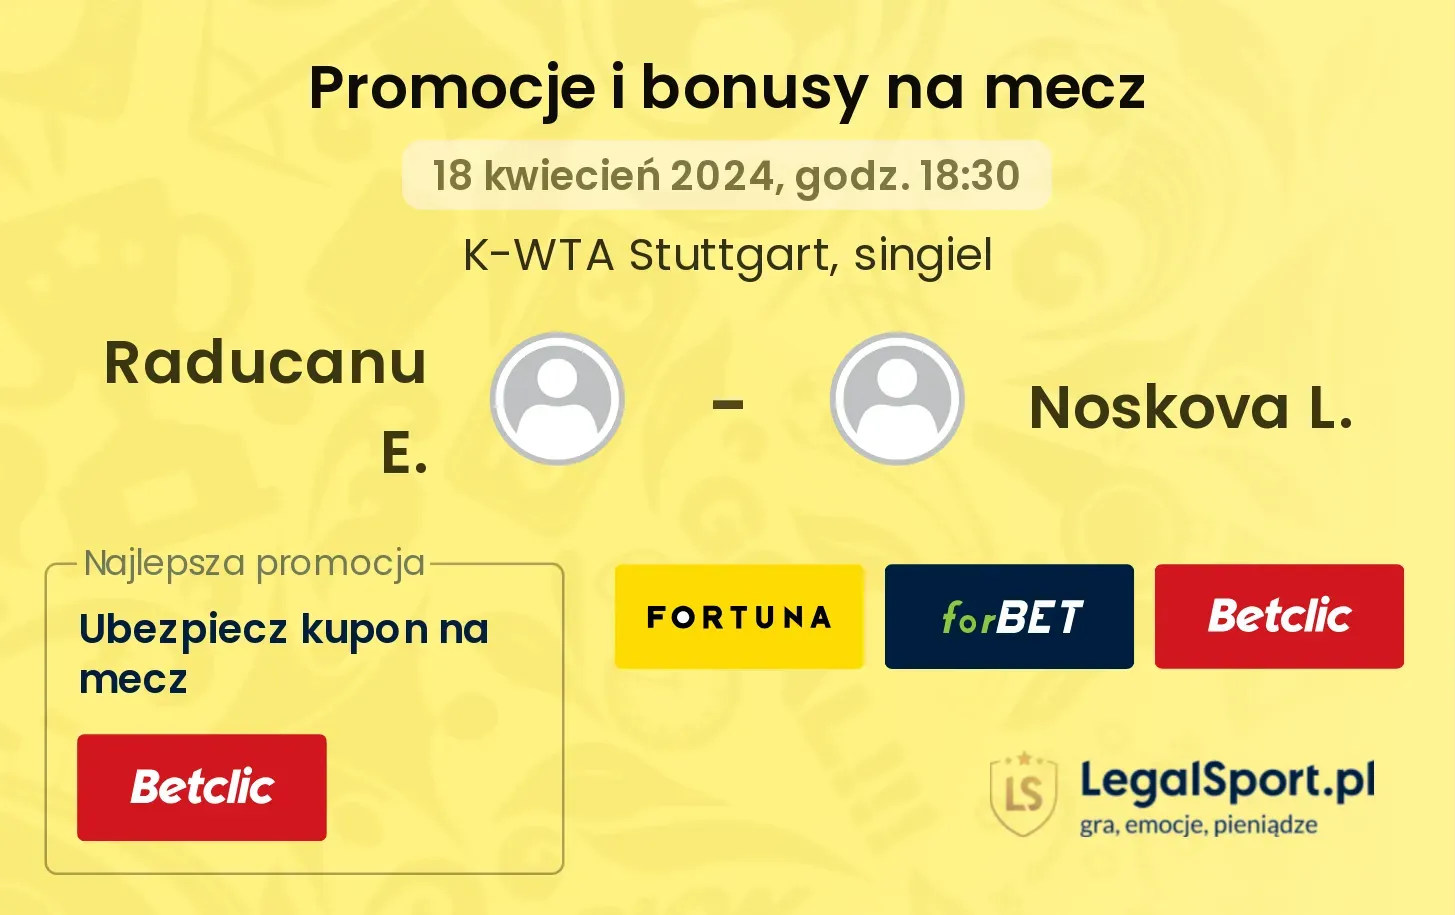 Raducanu E. - Noskova L. promocje bonusy na mecz